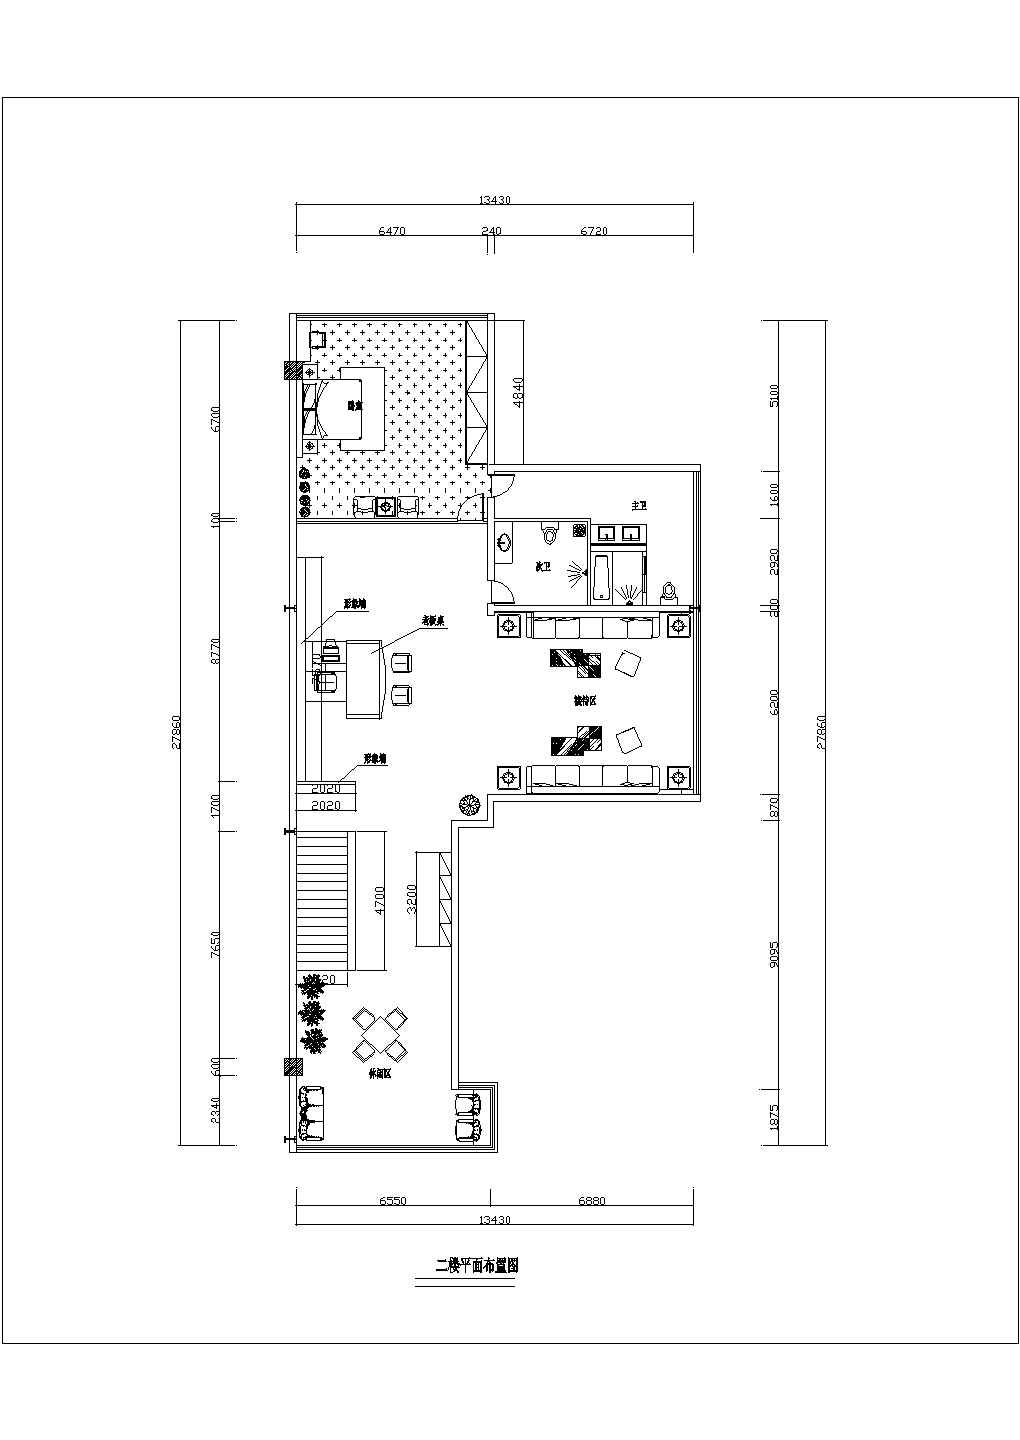 西安某公司二层办公楼工装全套设计施工图纸